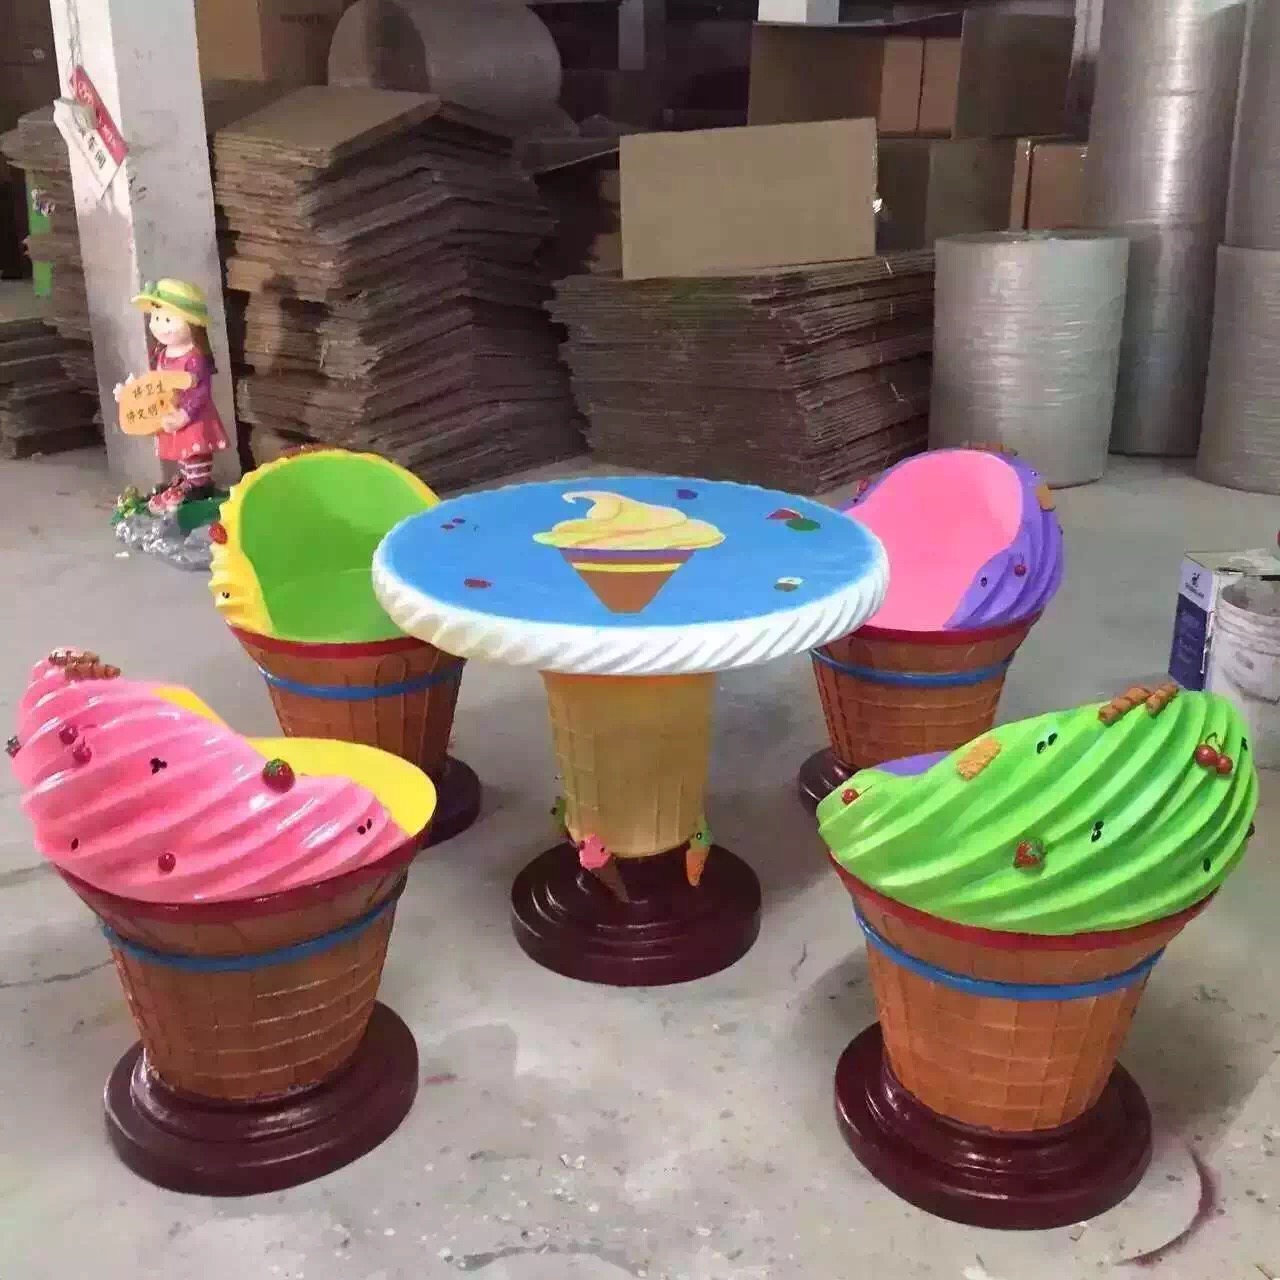 冰淇淋主題桌椅雕塑